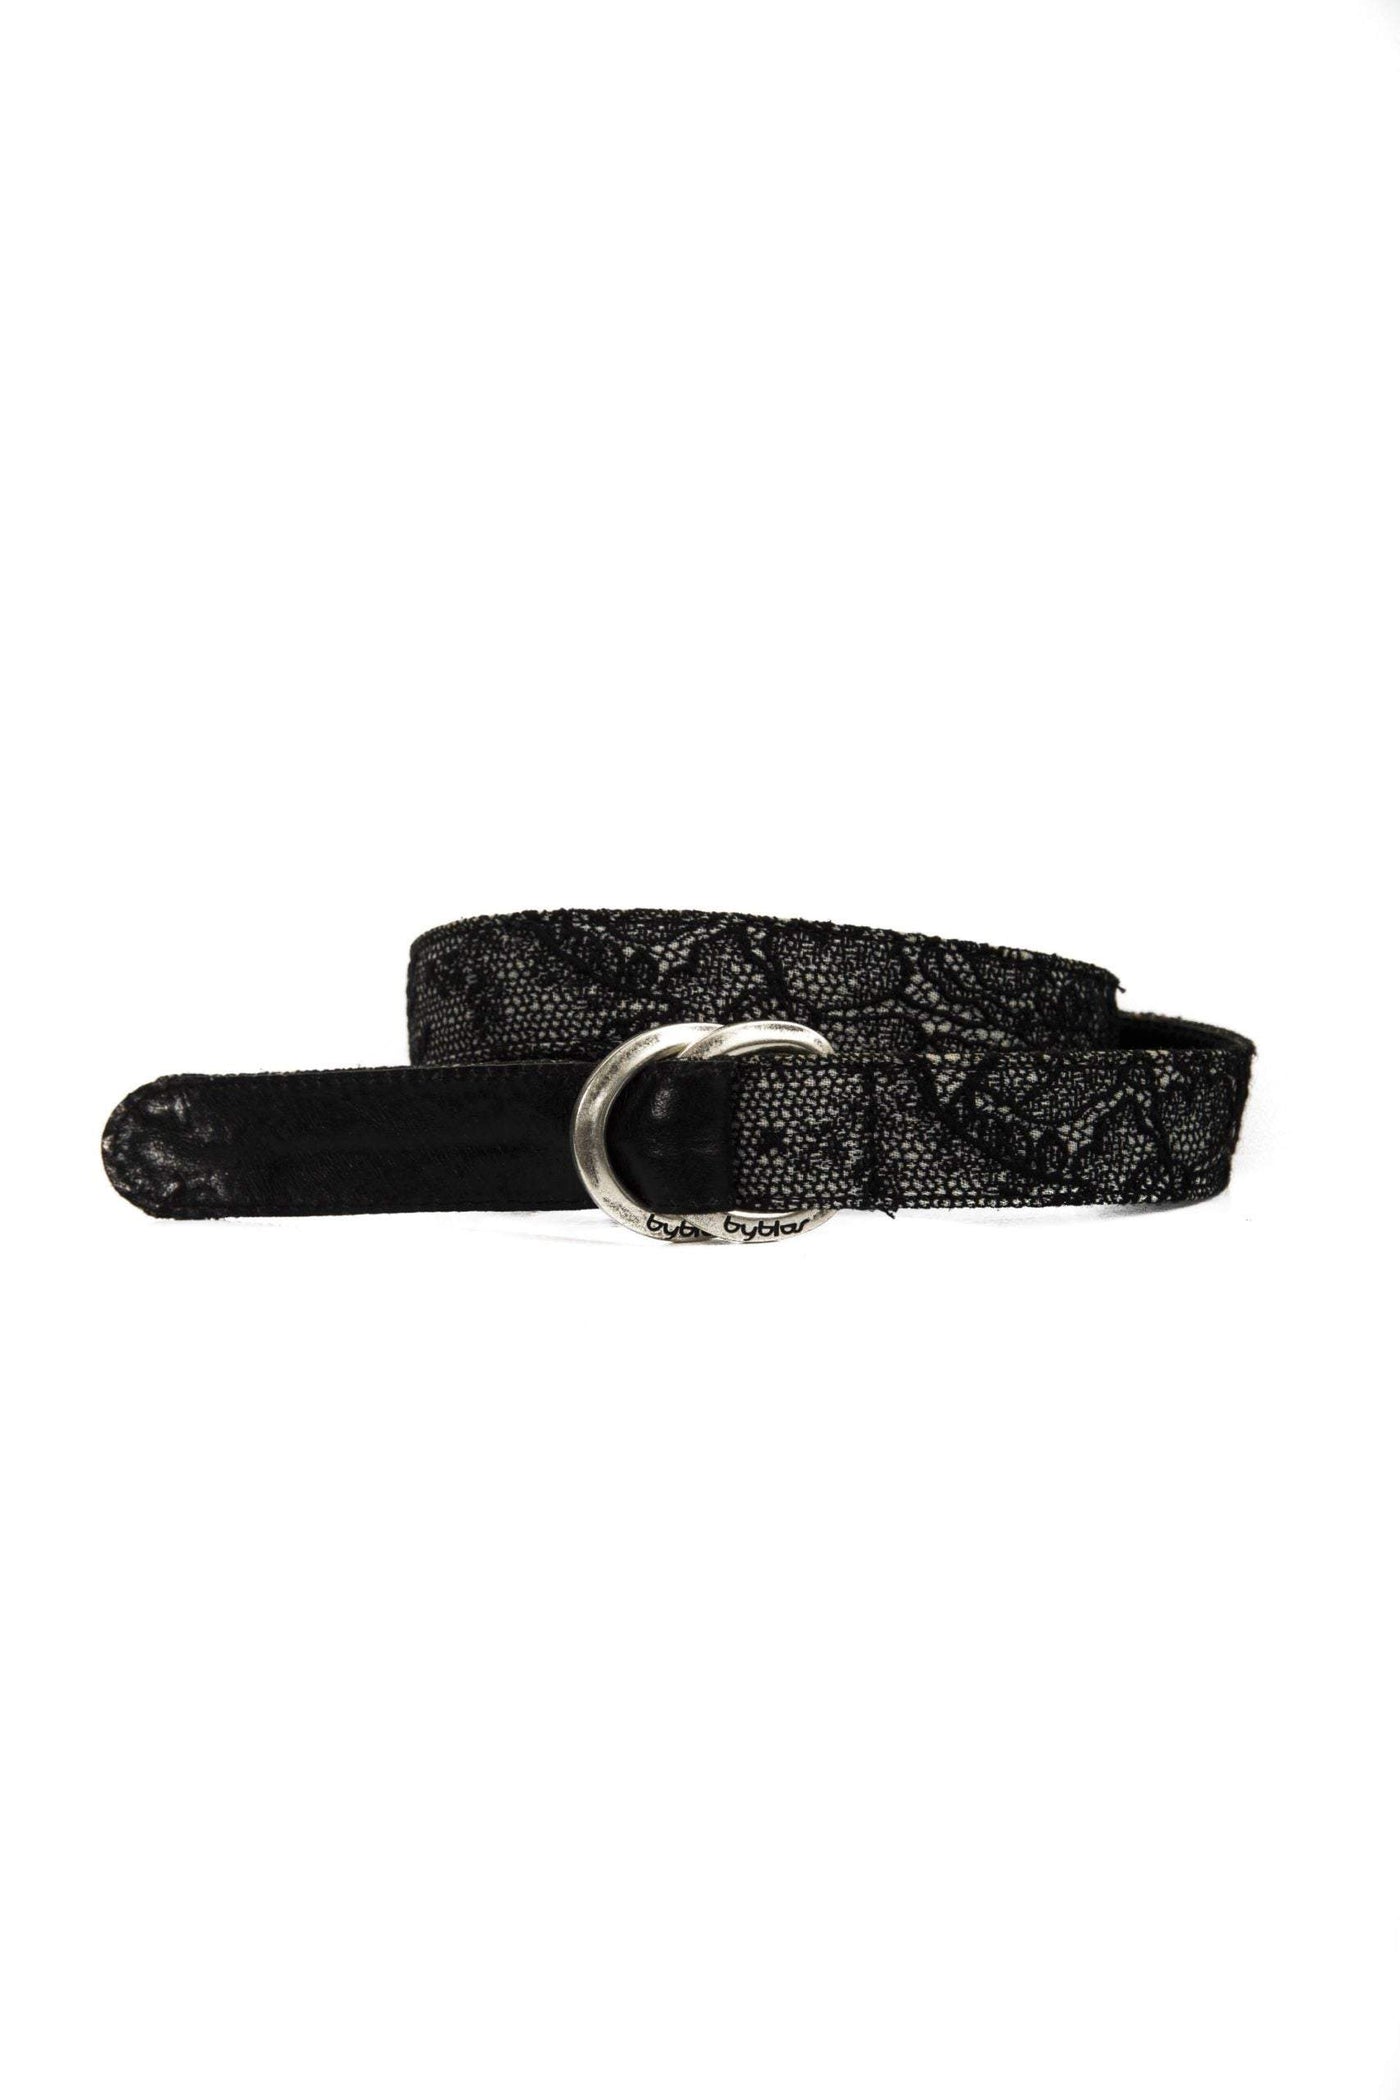 BYBLOS Black Wool Belt Belts - Women - Accessories, Black, BYBLOS, feed-1 at SEYMAYKA